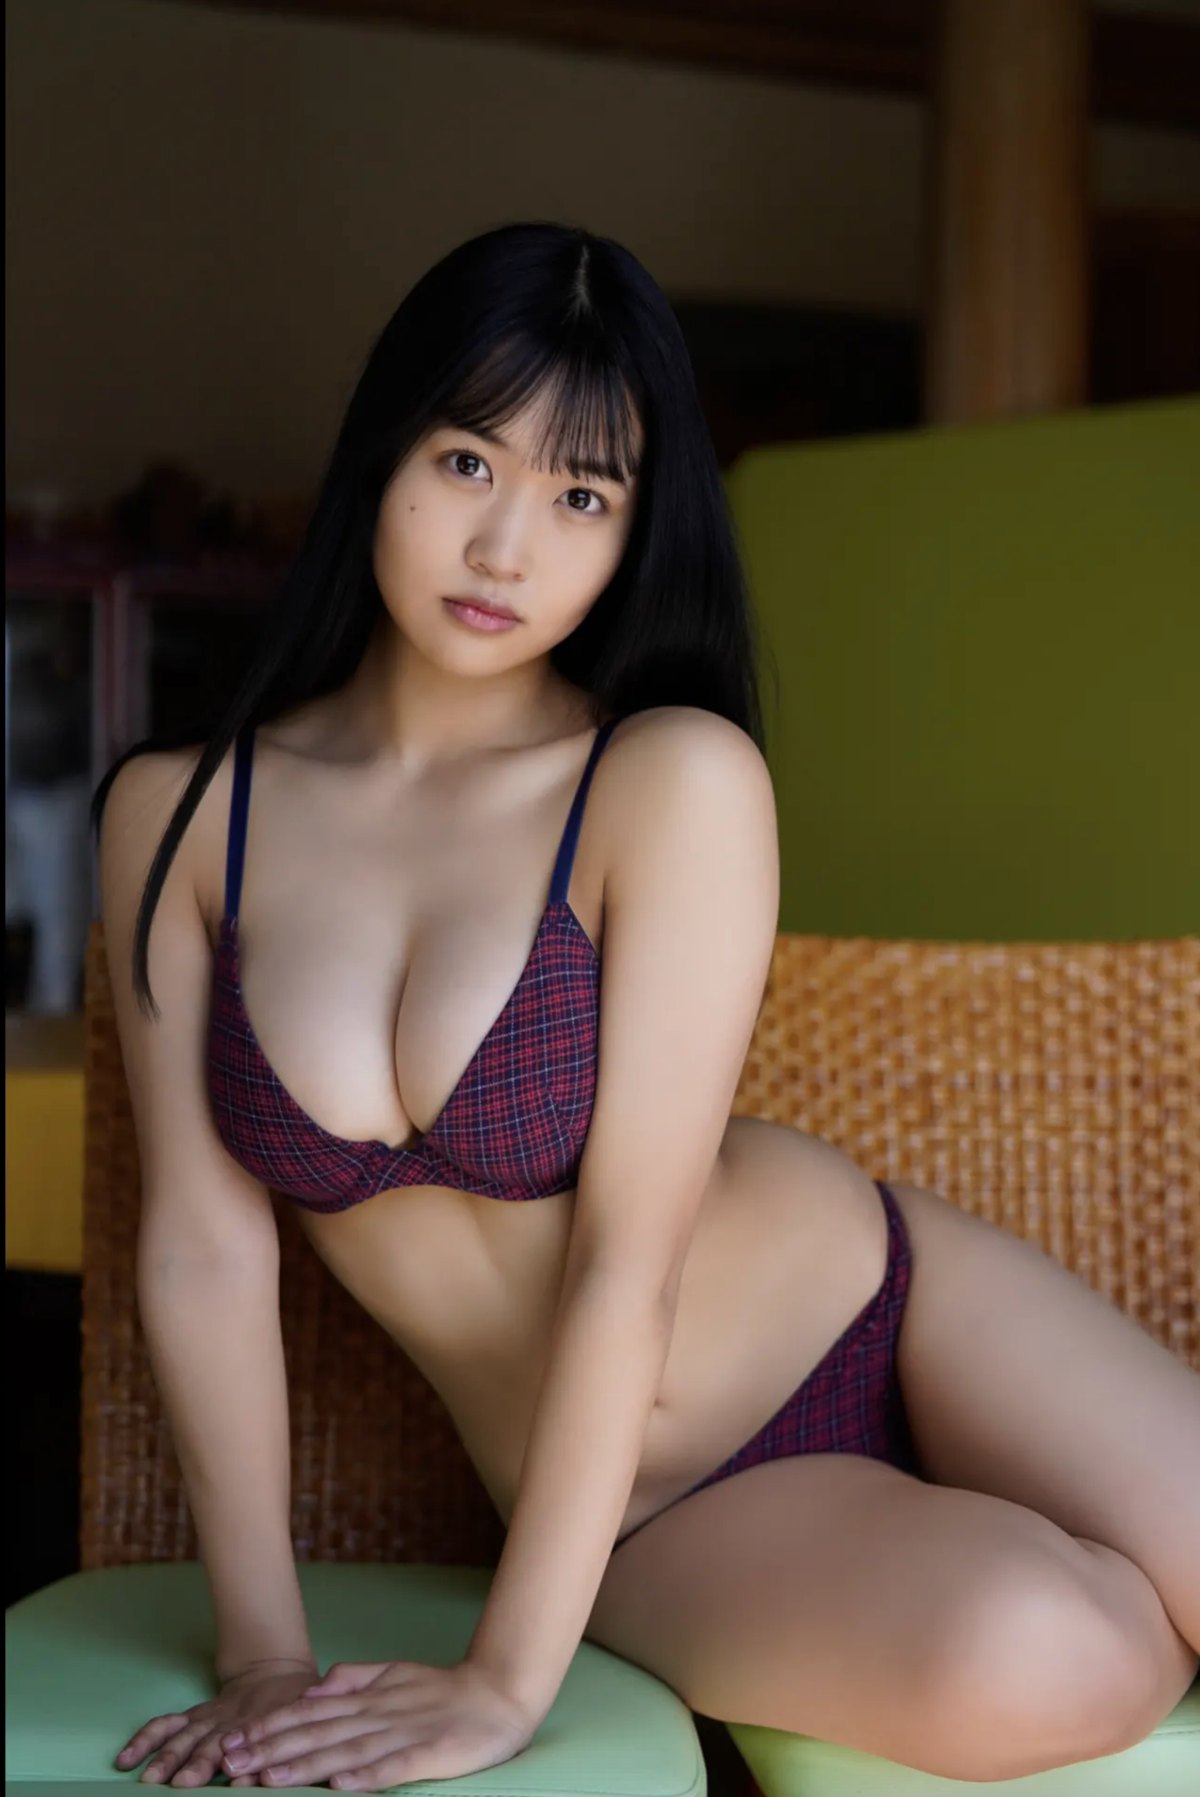 FRIDAYデジタル写真集 Miyuka Minami 南みゆか Bikini Cinderella Full Version 0005 6017405959.jpg